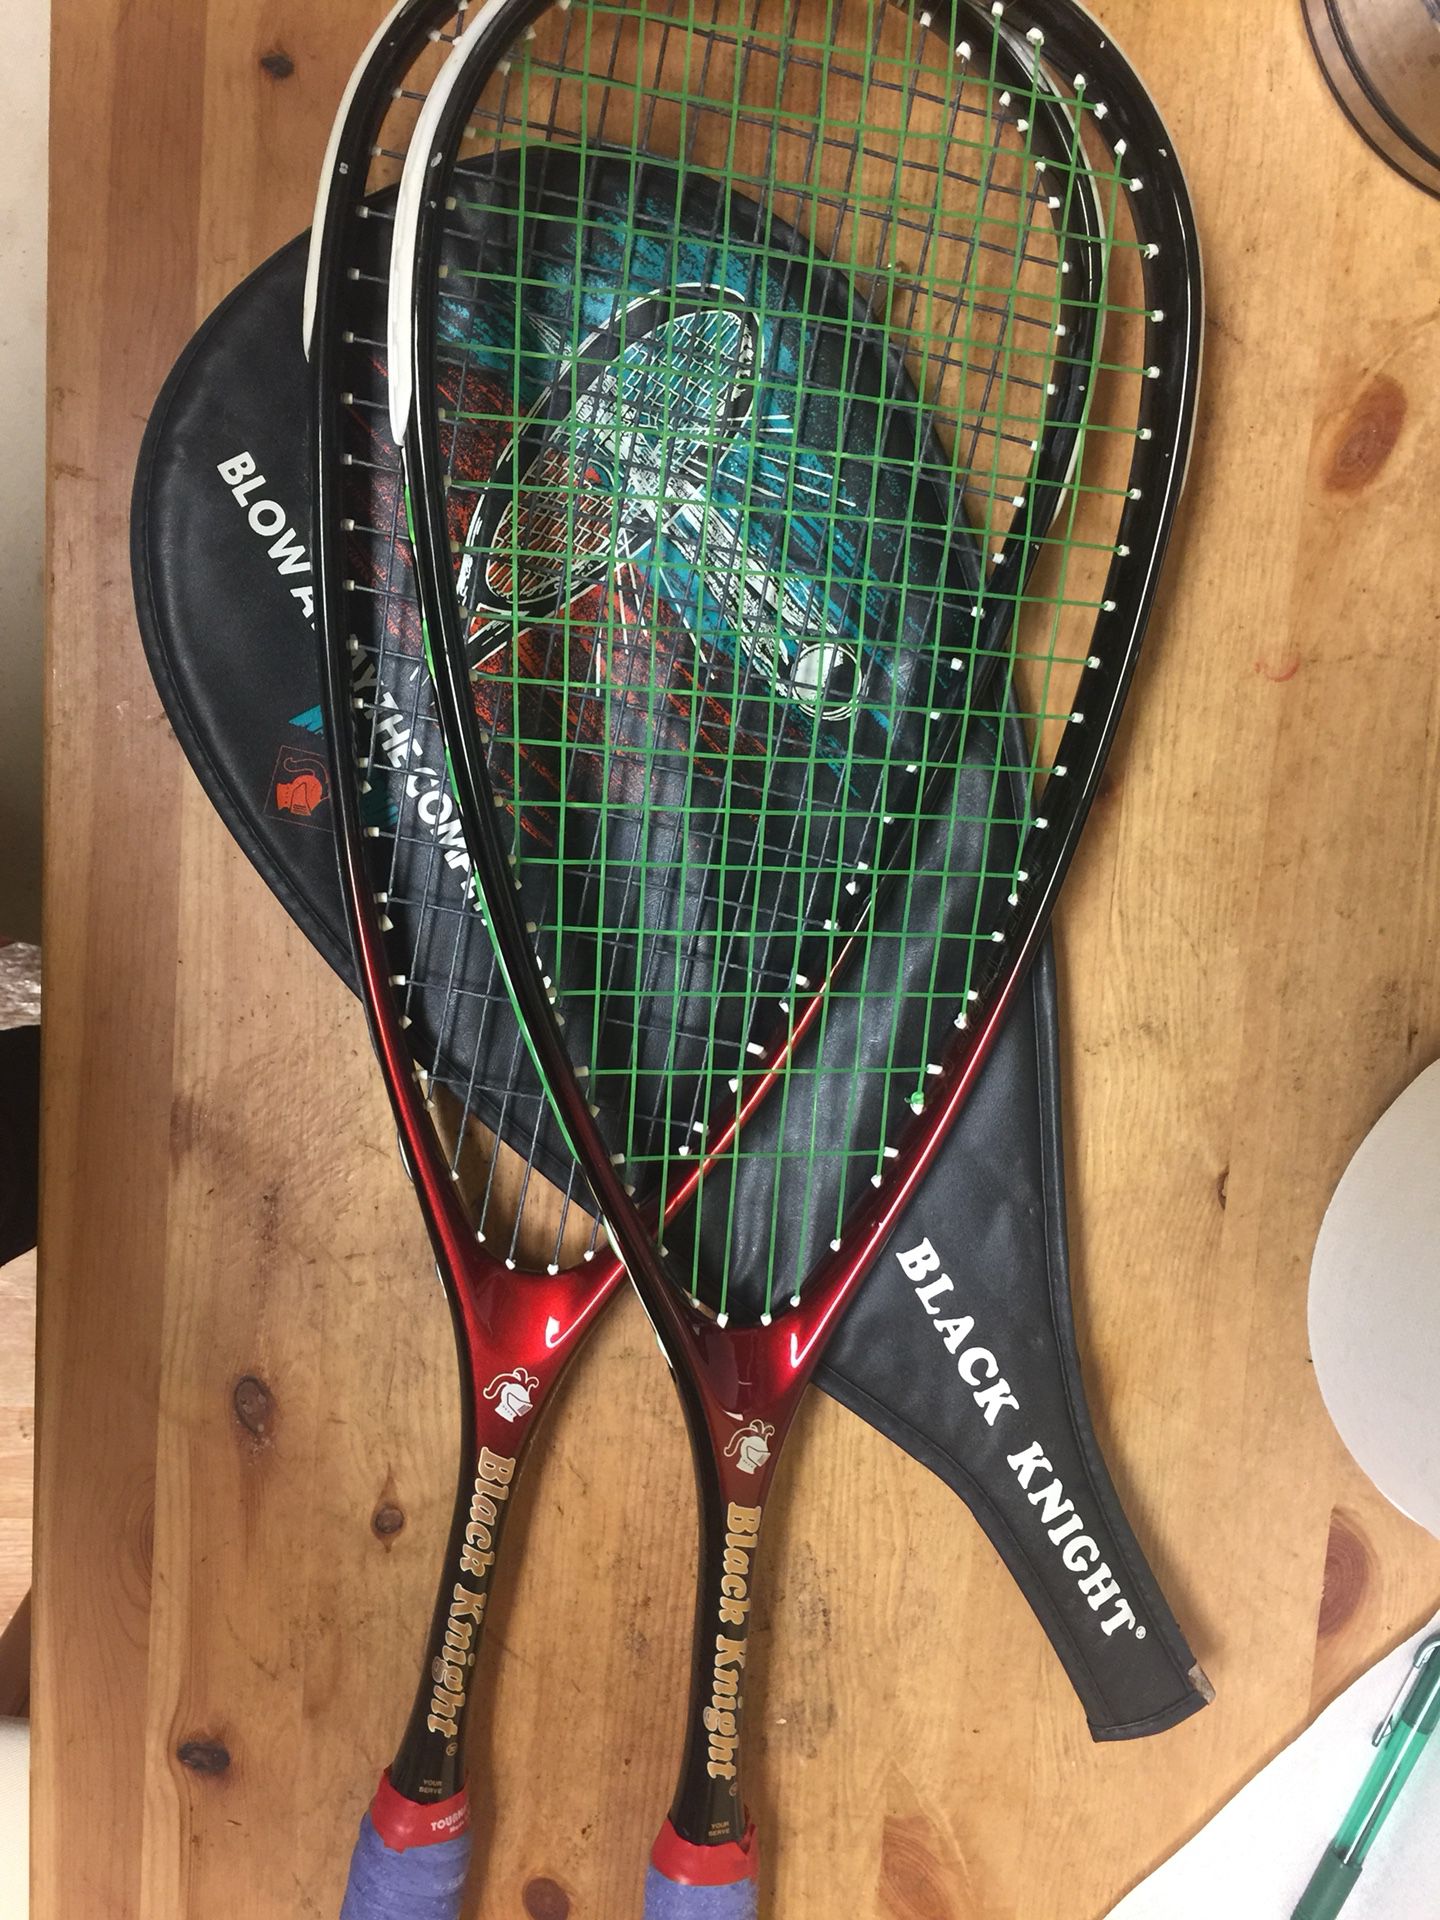 Used black knight Tennis racket